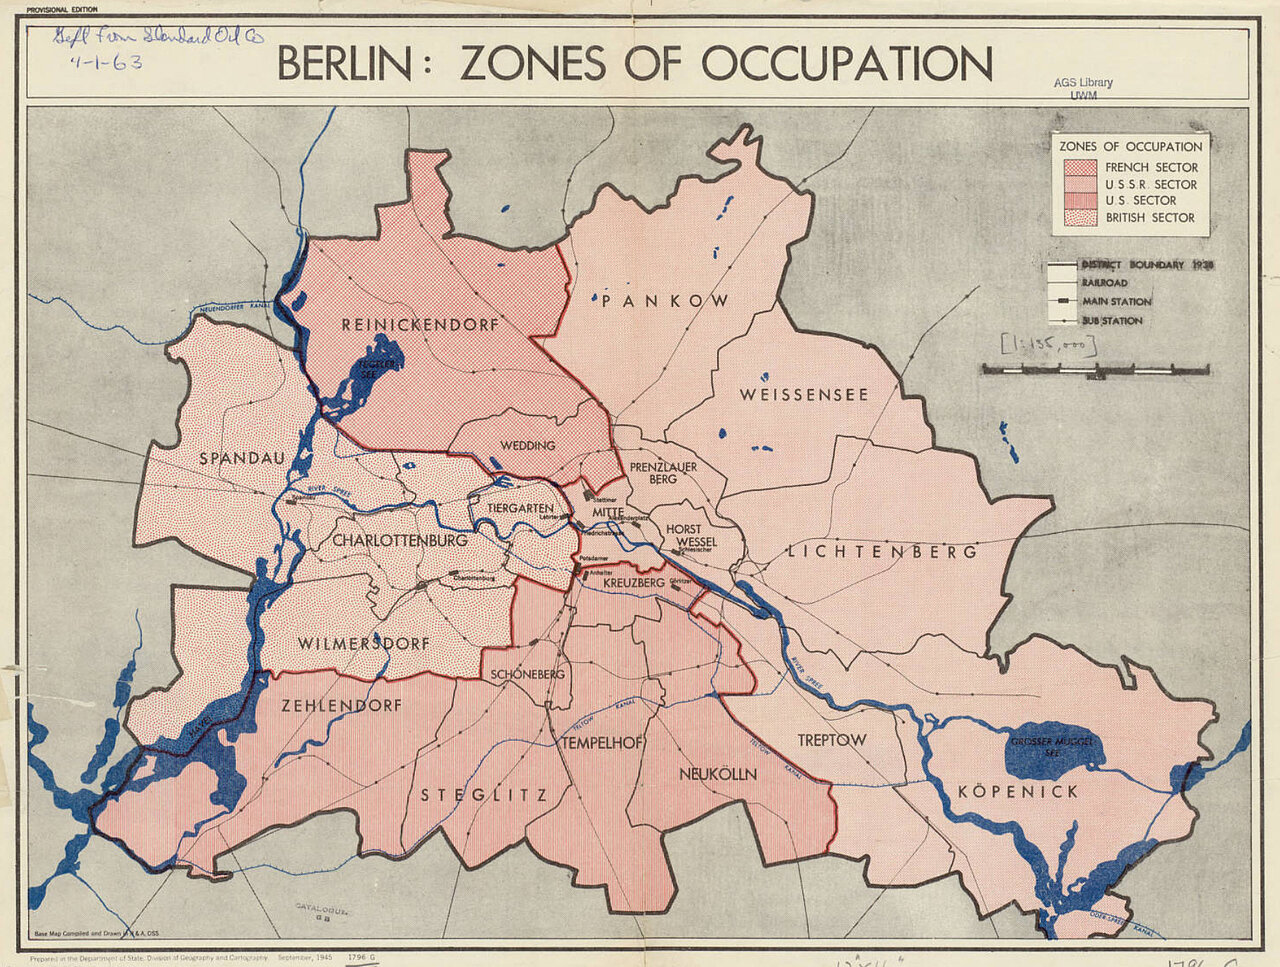 Farbgrafik: Karte von Berlin, die die Unterteilung in vier Zonen durch farblich abgegrenzte Flächen anzeigt.